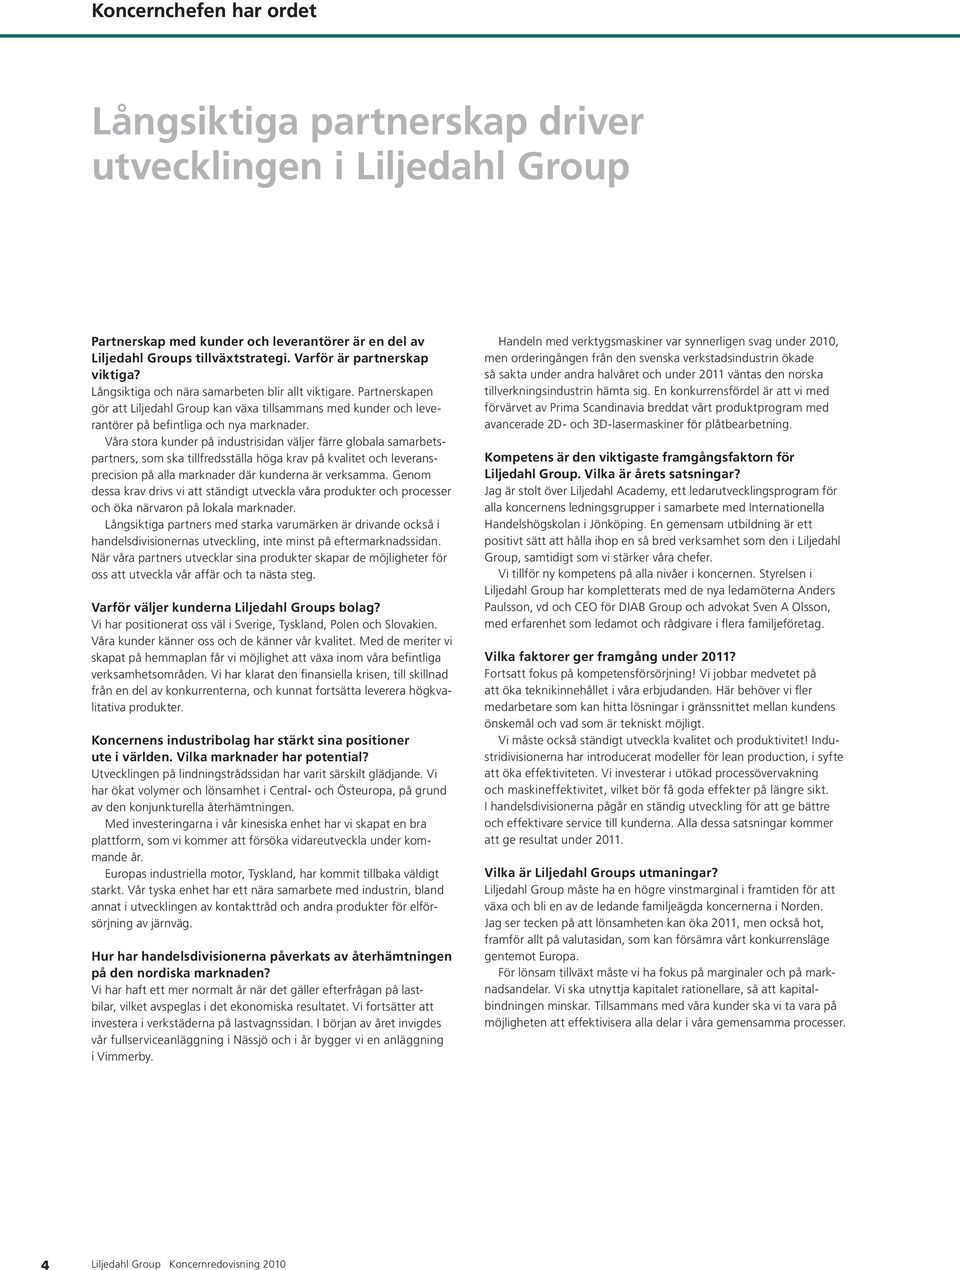 Partnerskapen gör att Liljedahl Group kan växa tillsammans med kunder och leverantörer på befintliga och nya marknader.